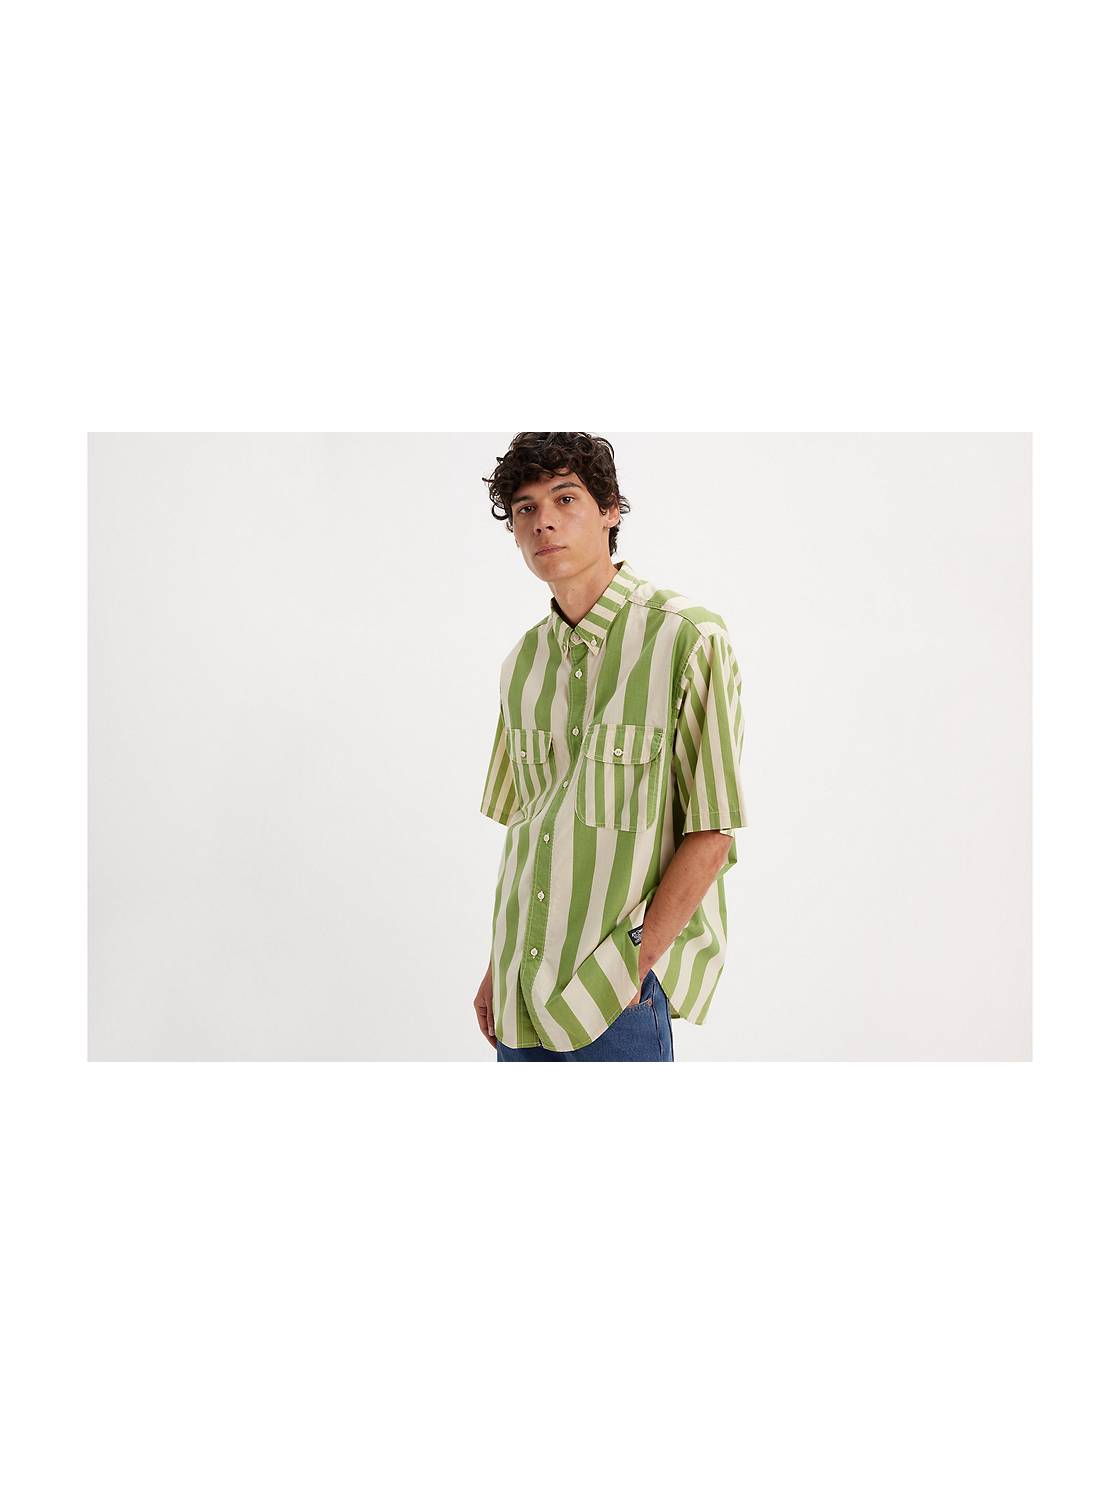 Levi's® Skateboarding Short Sleeve Woven Shirt 1